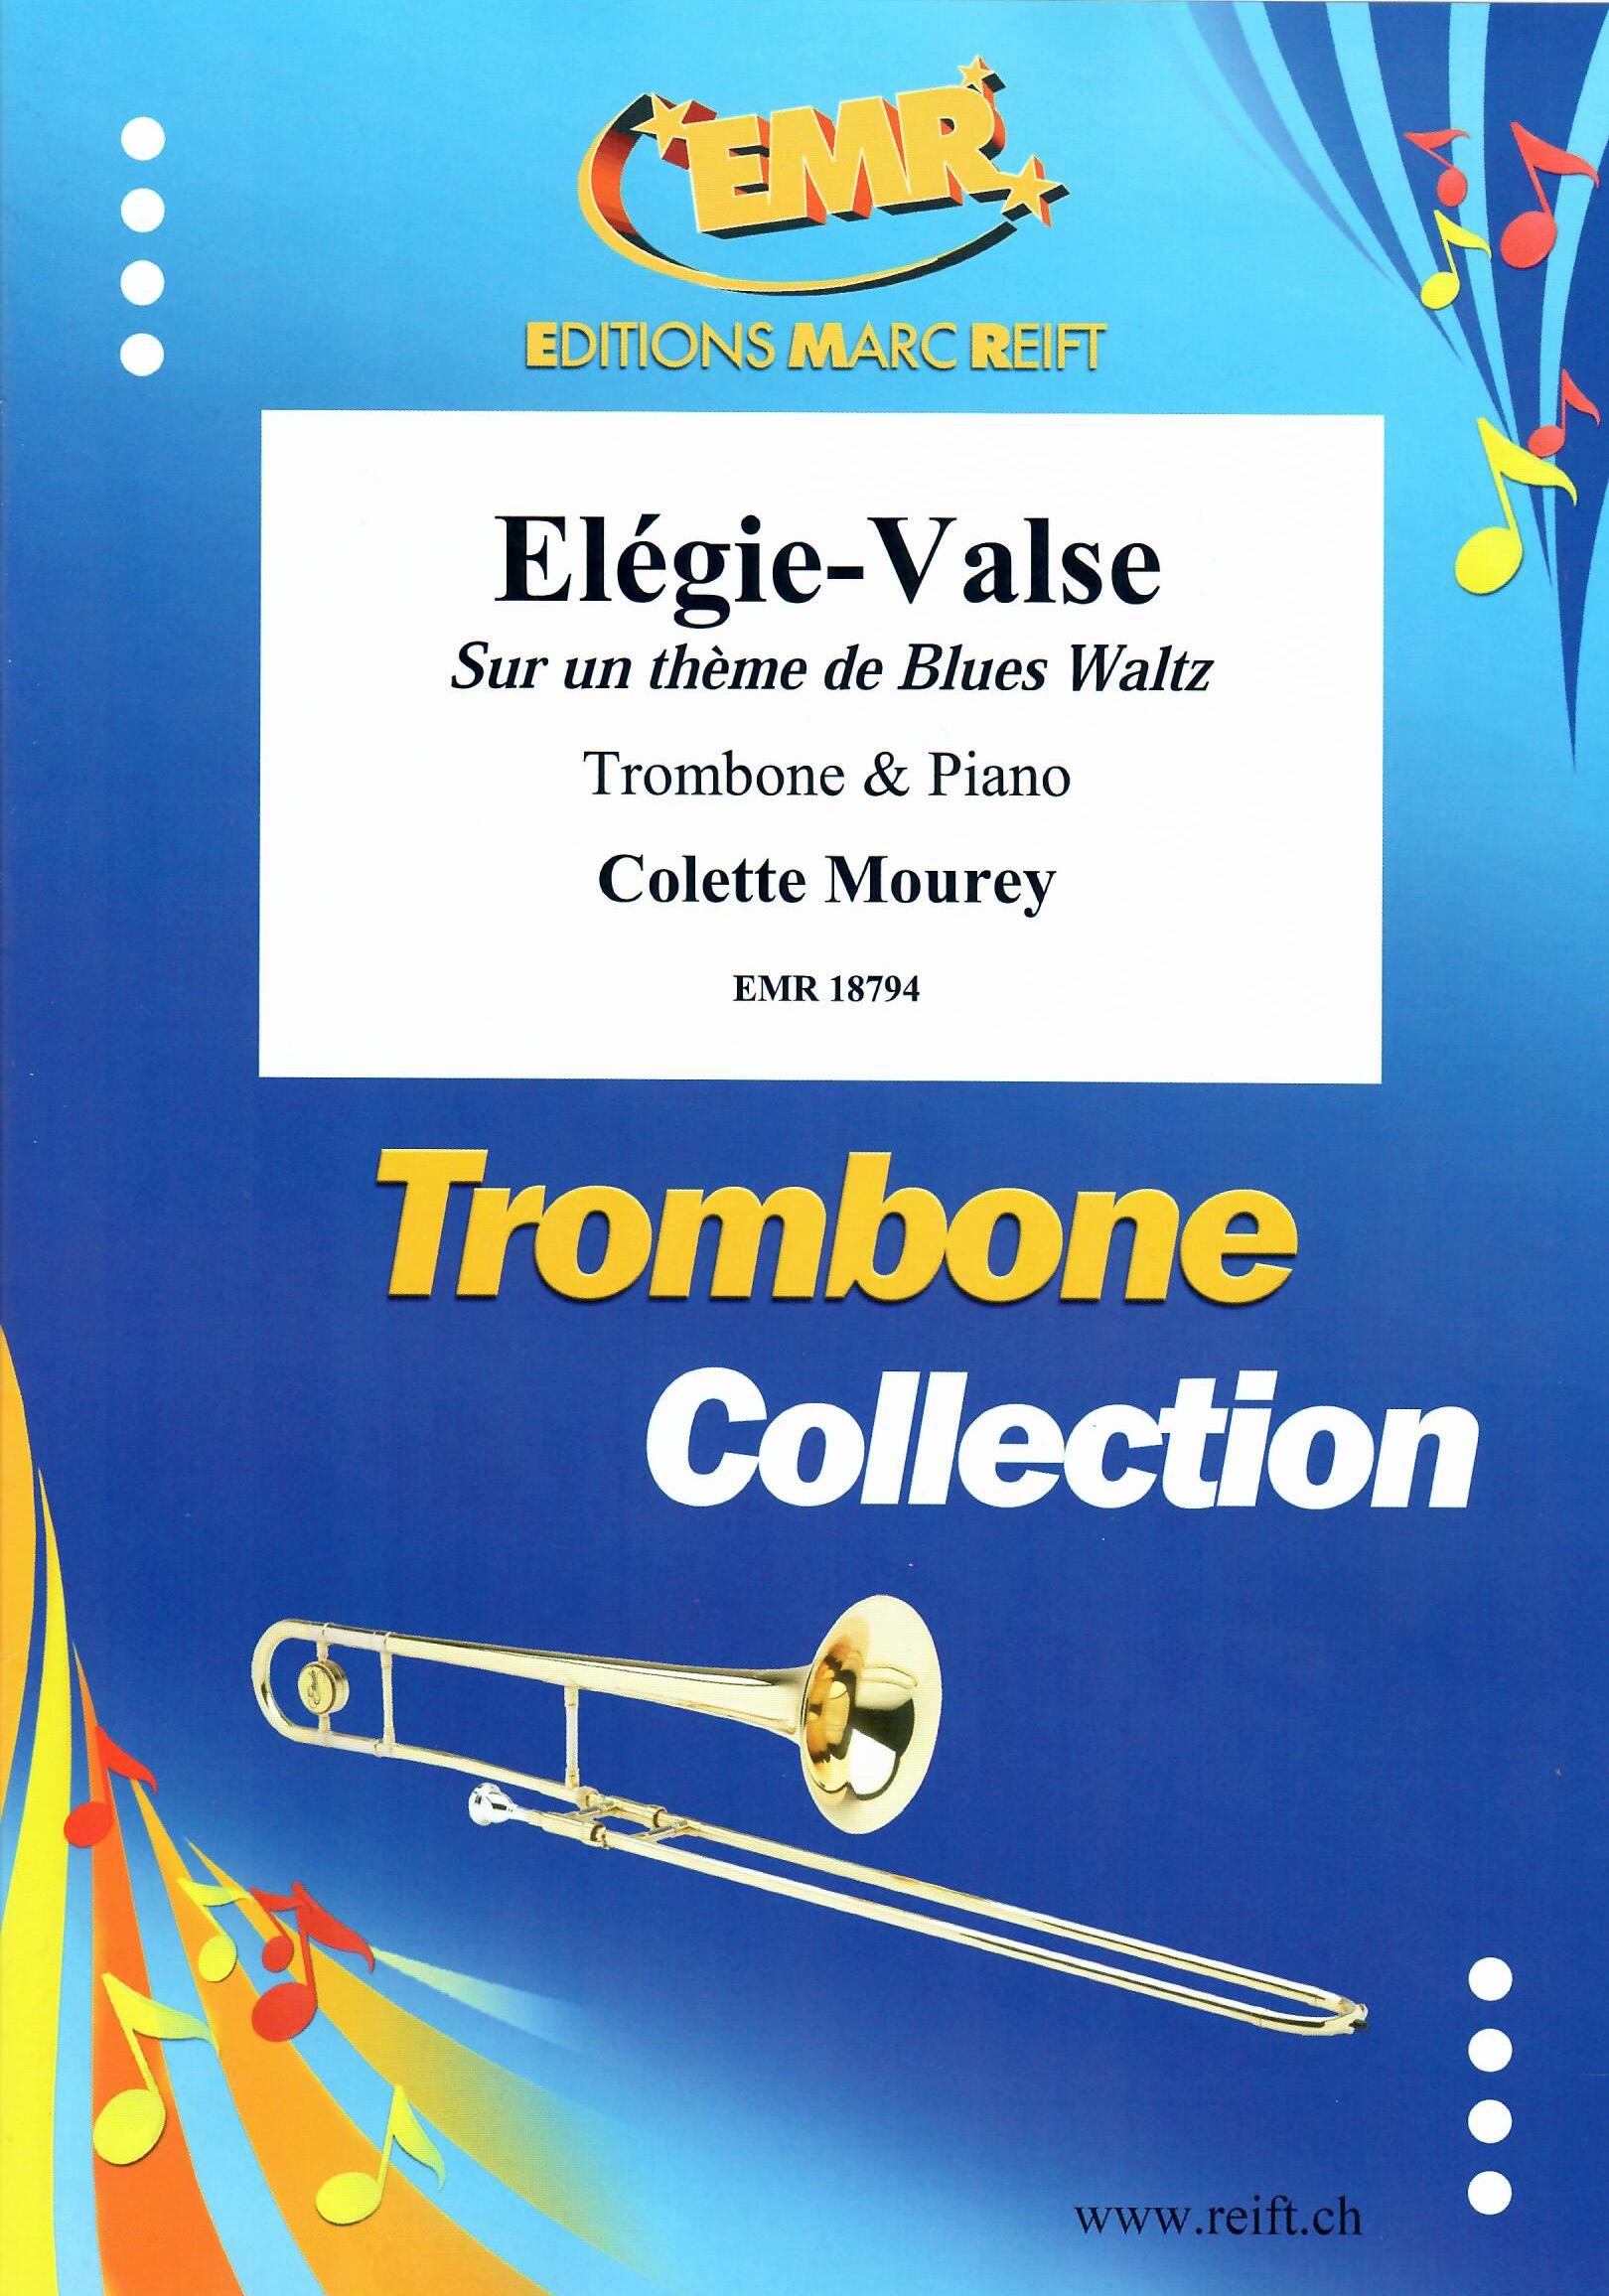 ELéGIE-VALSE, SOLOS - Trombone